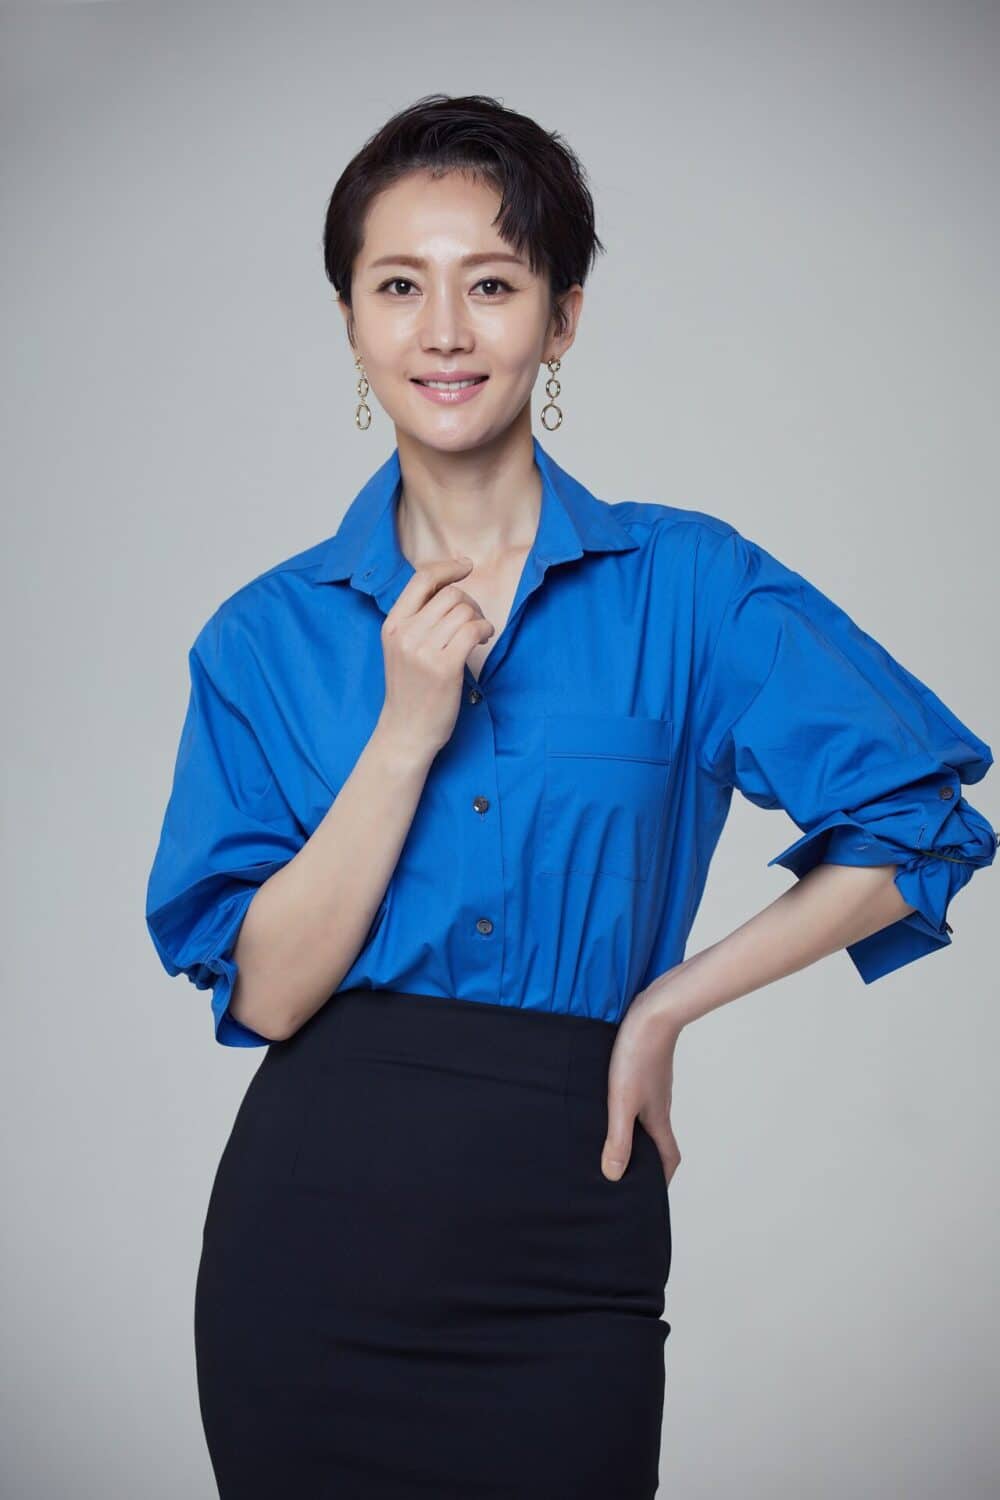 yum jung ah e1582290321636 - Yum Jung Ah: Từ Á hậu Hàn Quốc đến diễn viên xuất sắc của làng giải trí